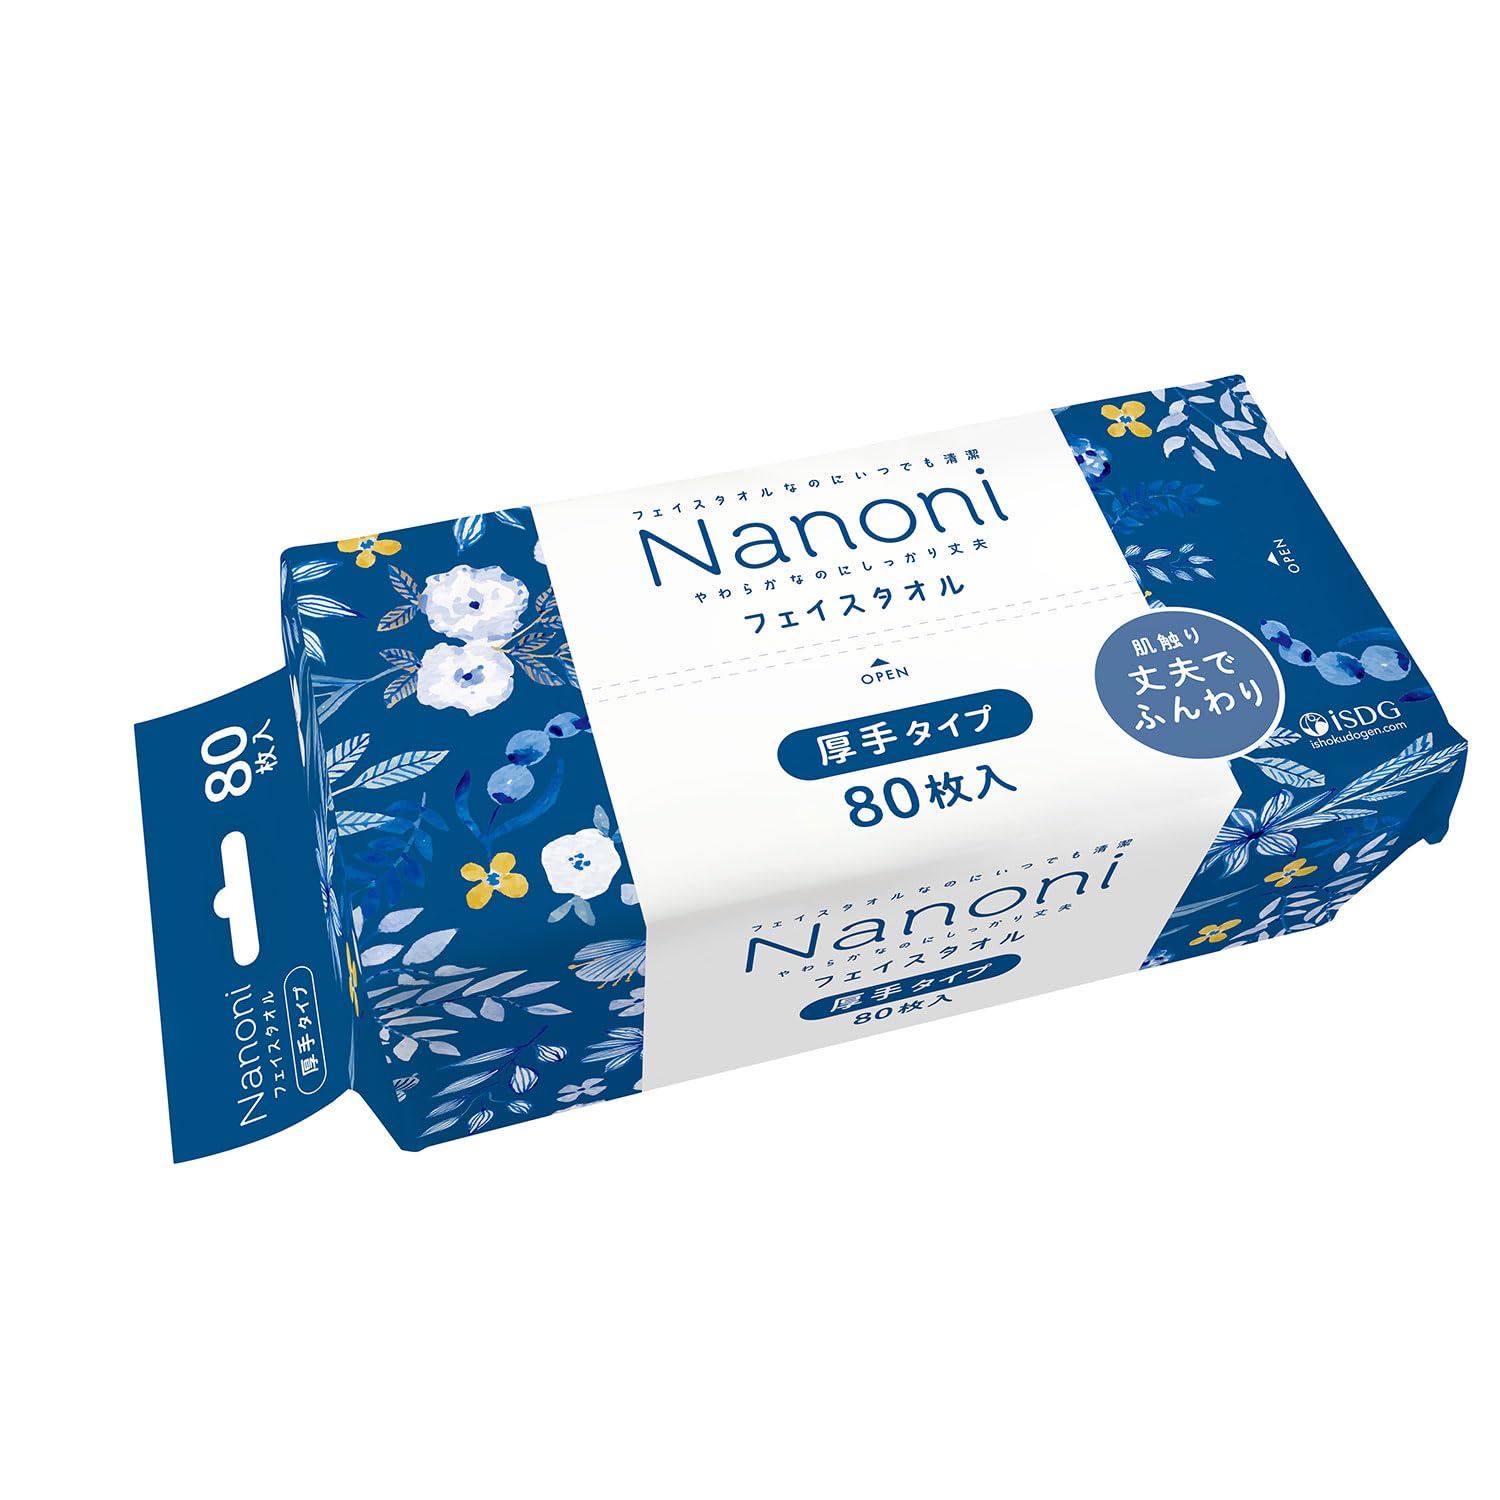 Nanoni いつでも清潔 Face towel (フェイスタオル) 厚手タイプ 80枚入り iSDG 医食同源ドットコム